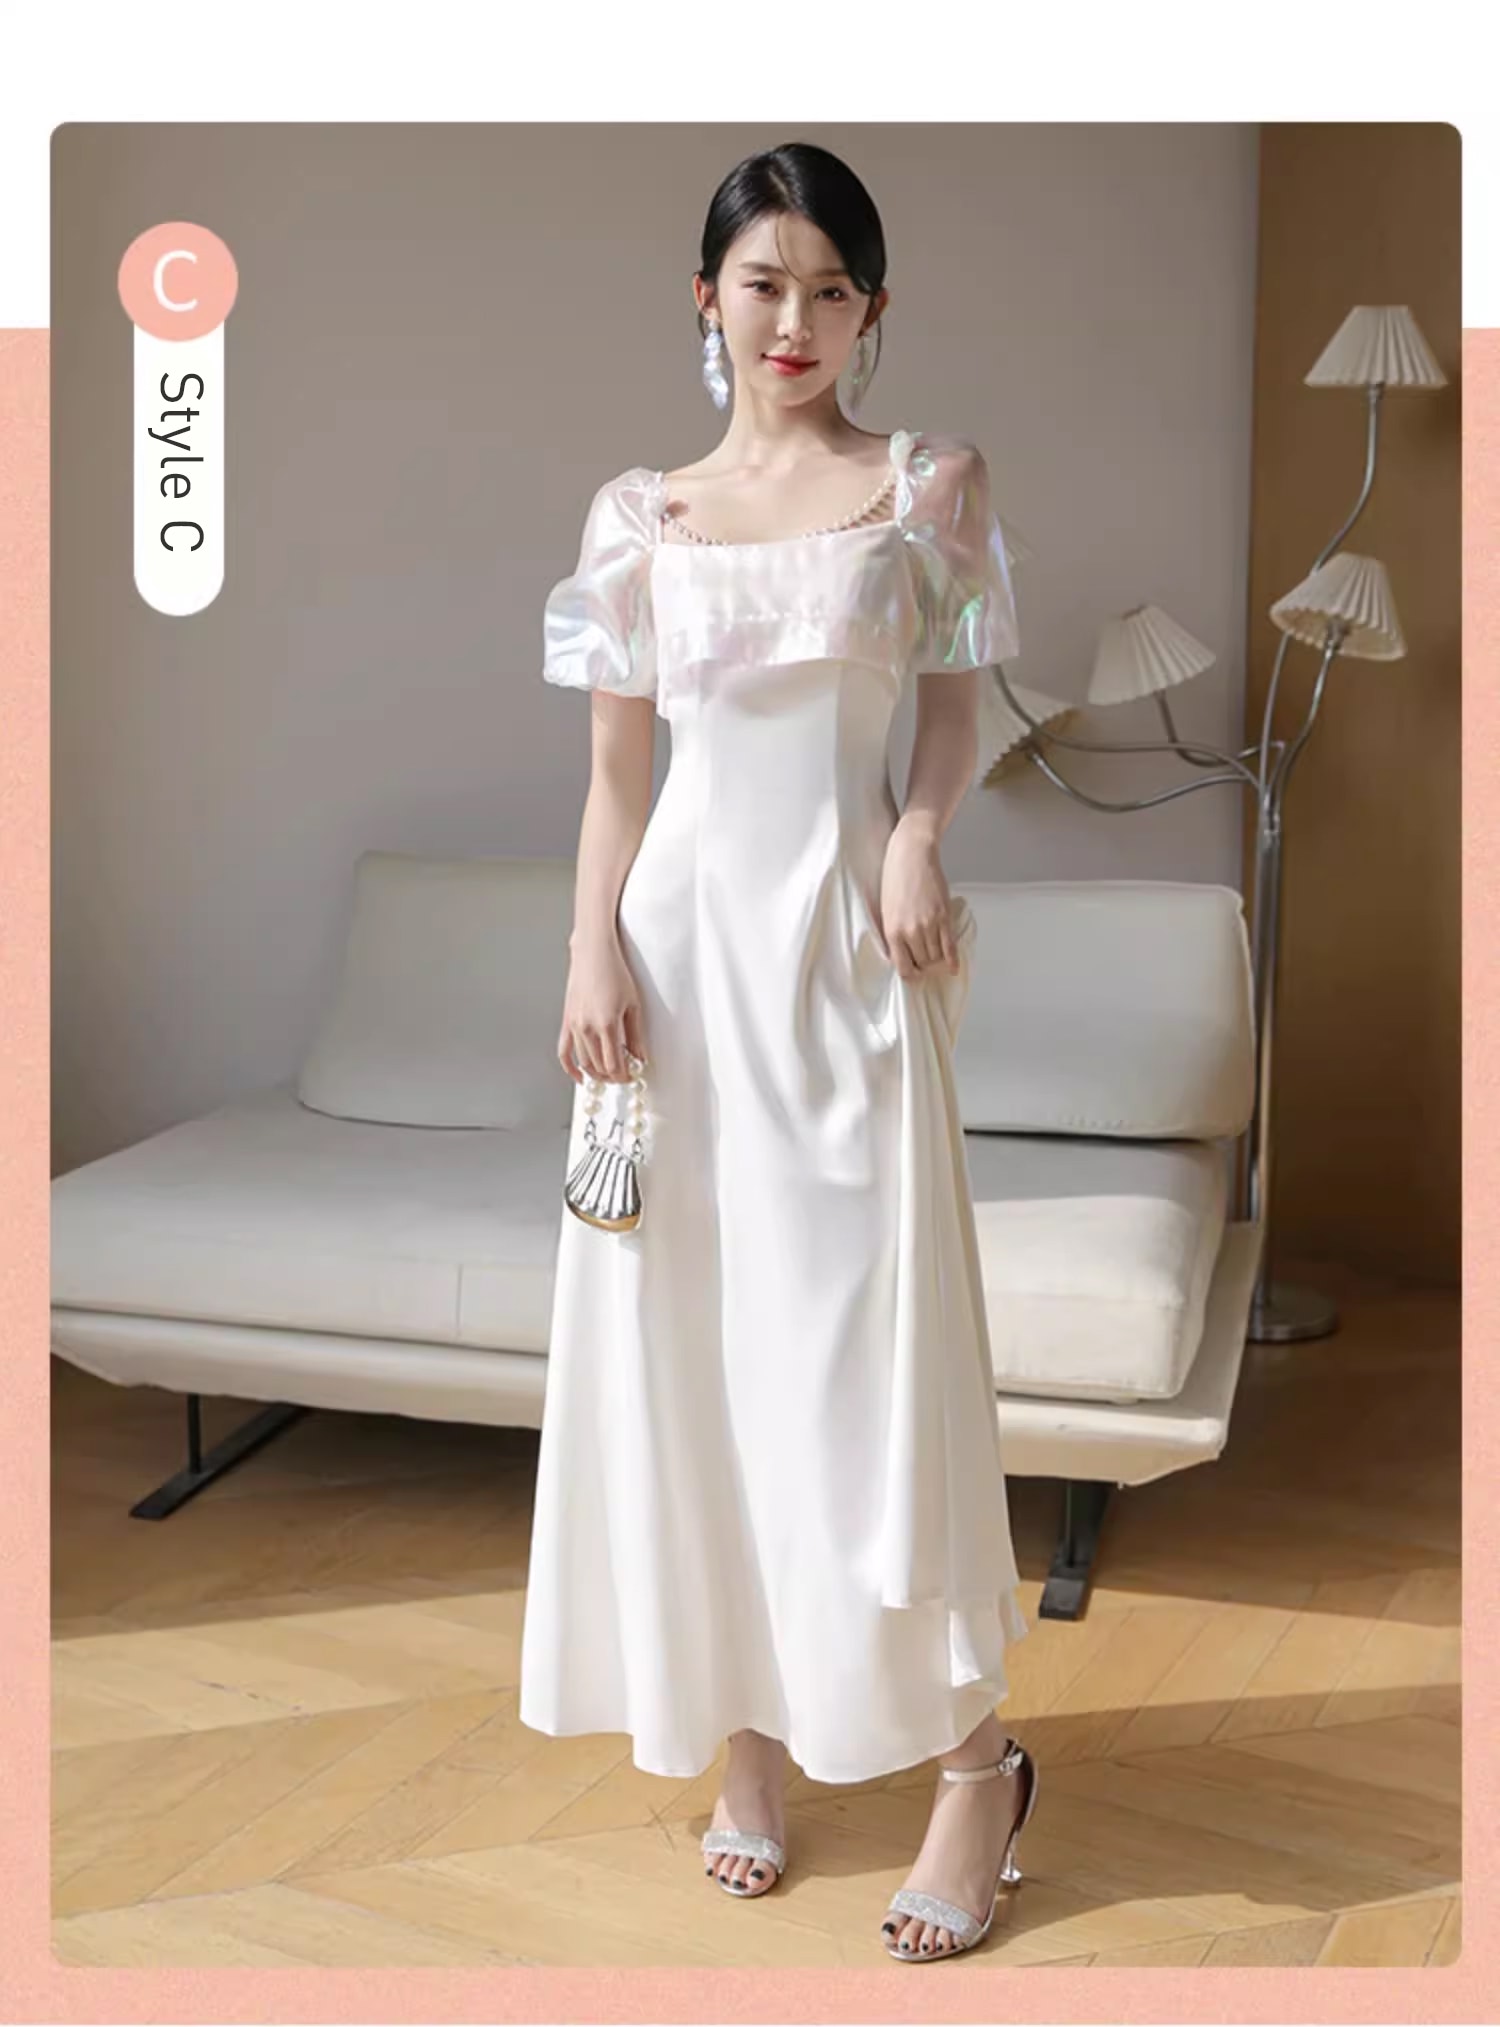 Unique-White-Wedding-Bridal-Party-Attire-Long-Dress-Evening-Gown20